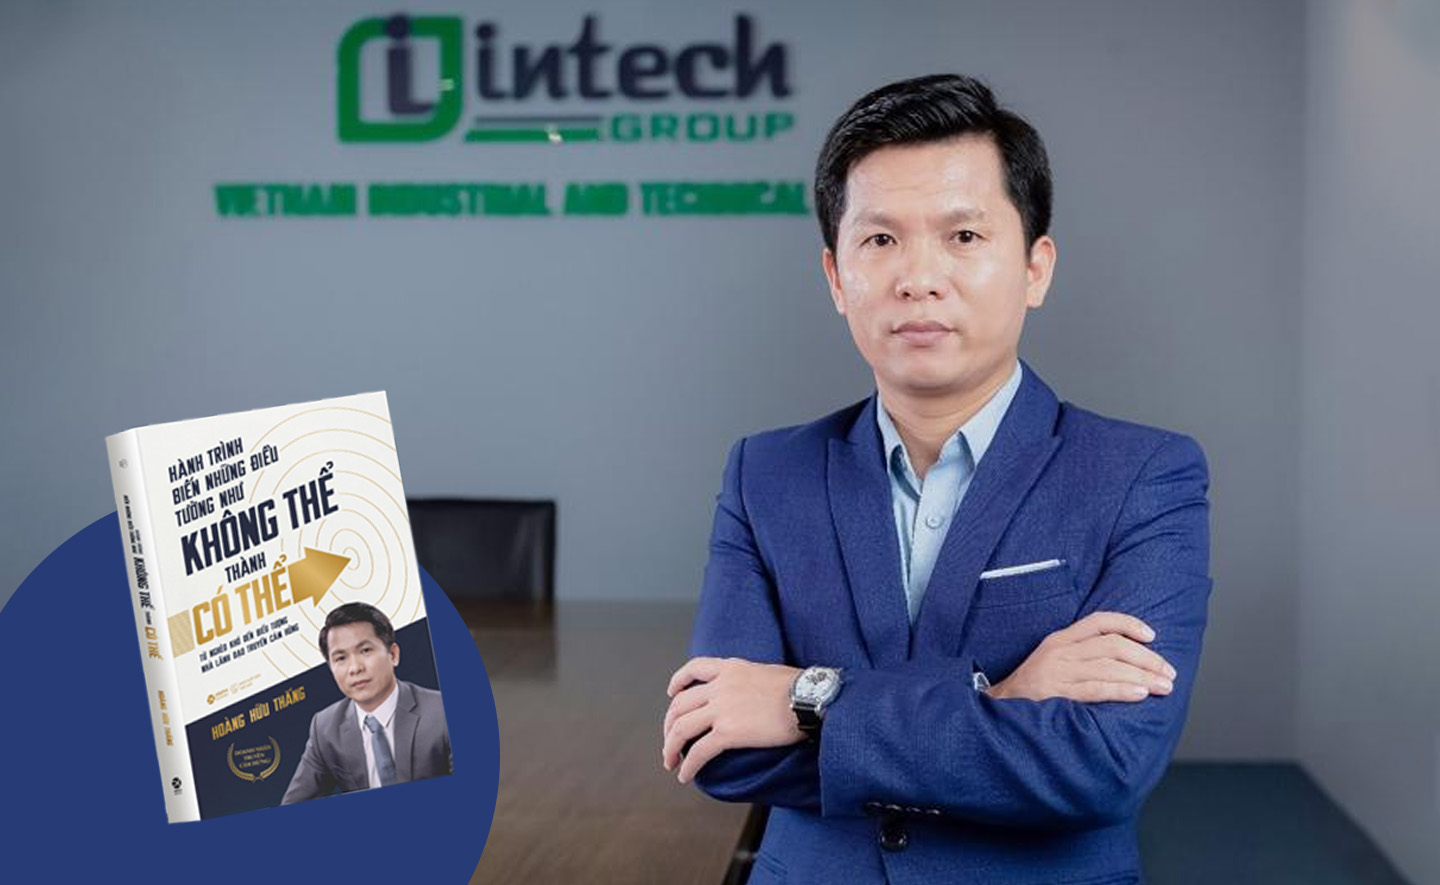 Intech Group - Hành trình khởi nghiệp truyền cảm hứng: Từ gian nhà trọ đến tập đoàn thuần Việt vươn tầm quốc tế